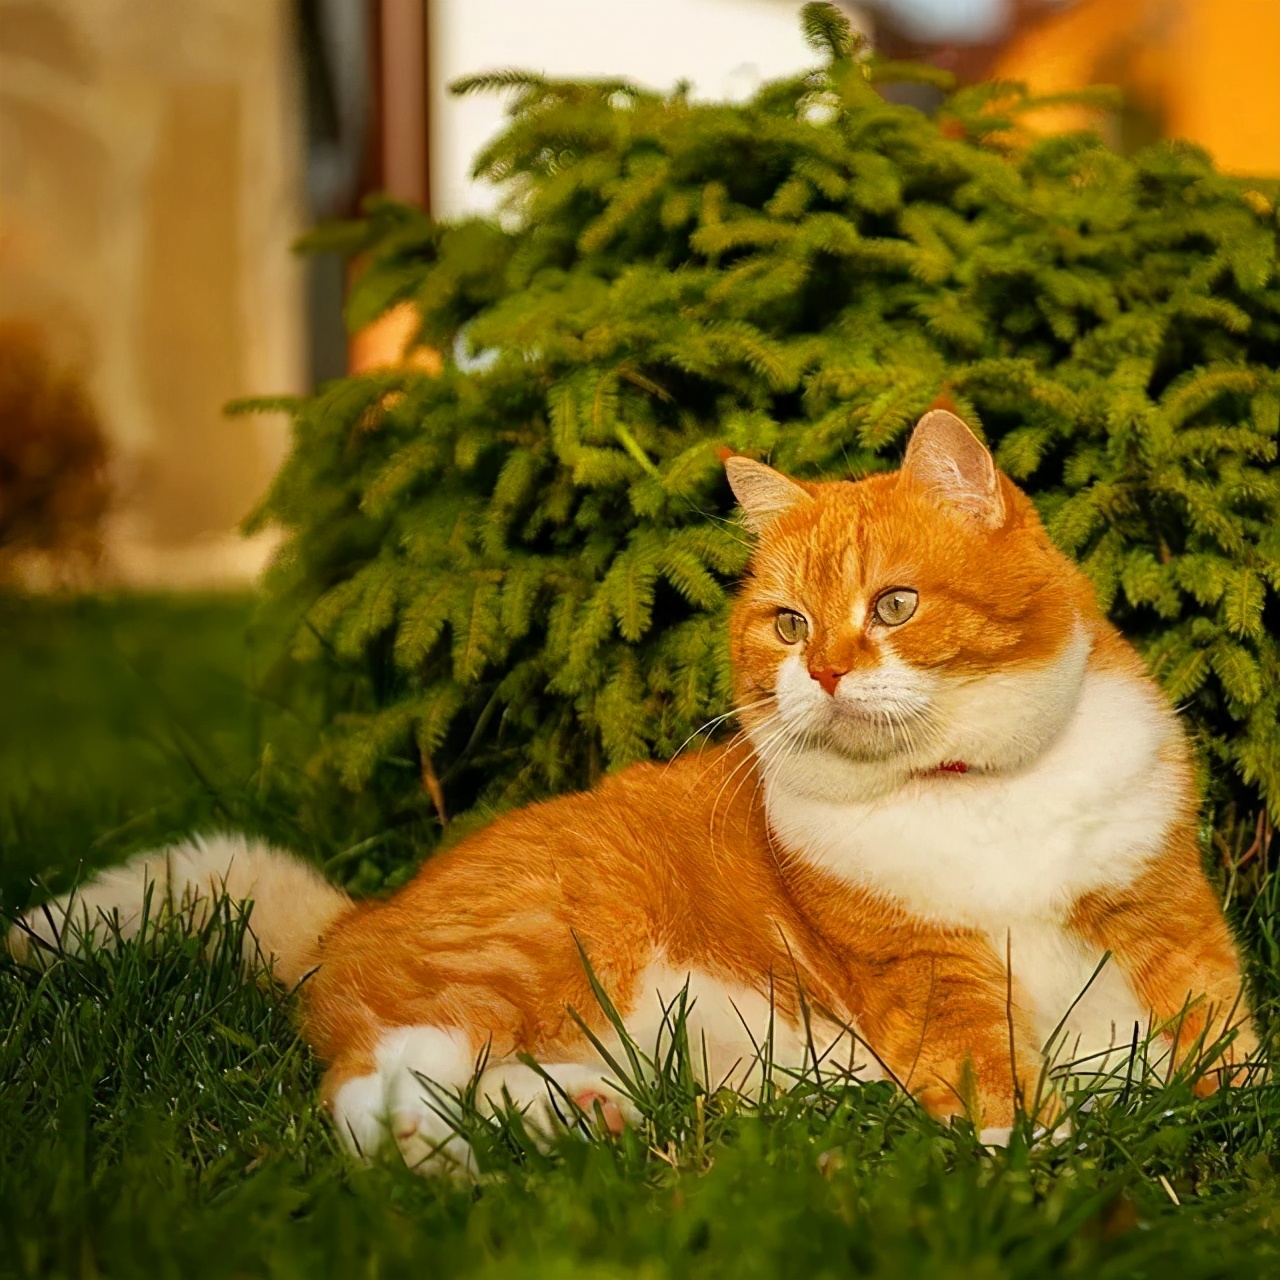 一只漂亮的橘猫,颜值高到圈粉无数猫奴